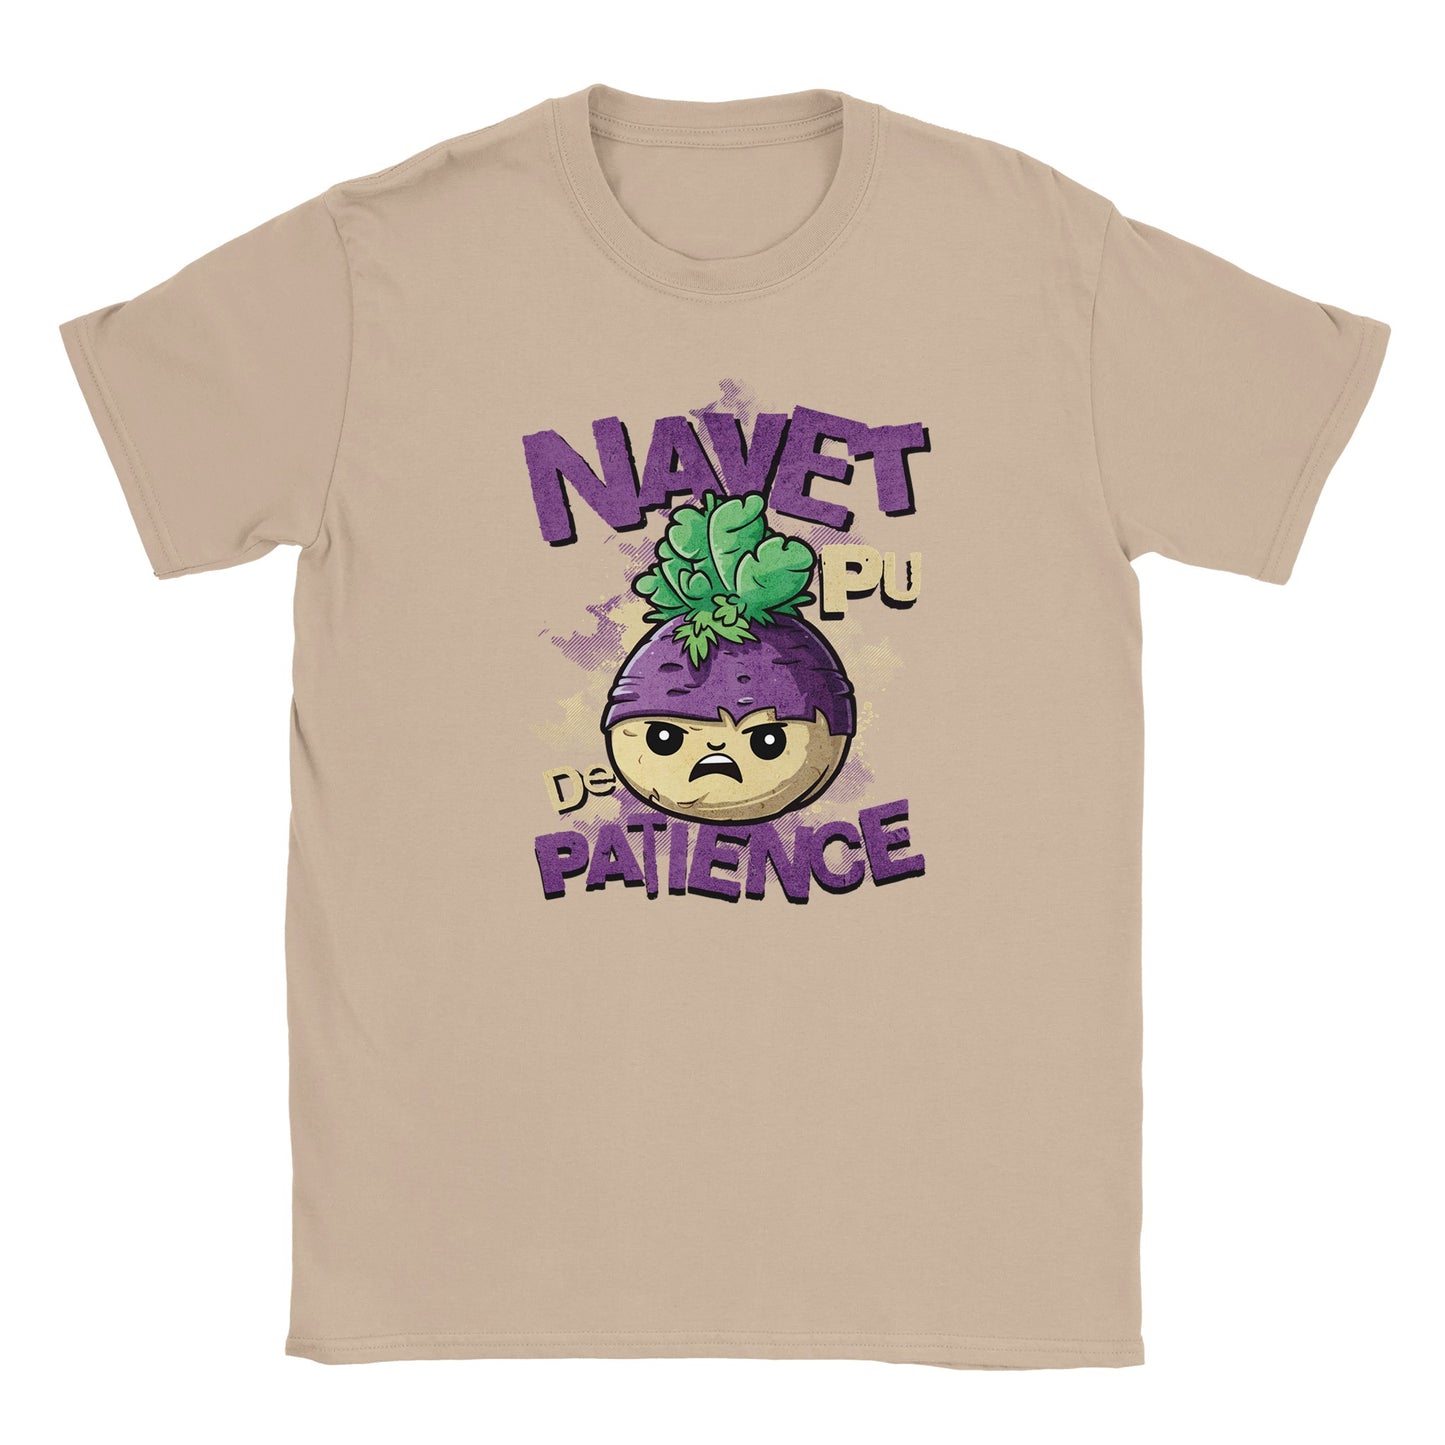 T-shirt - Navet pu de patience